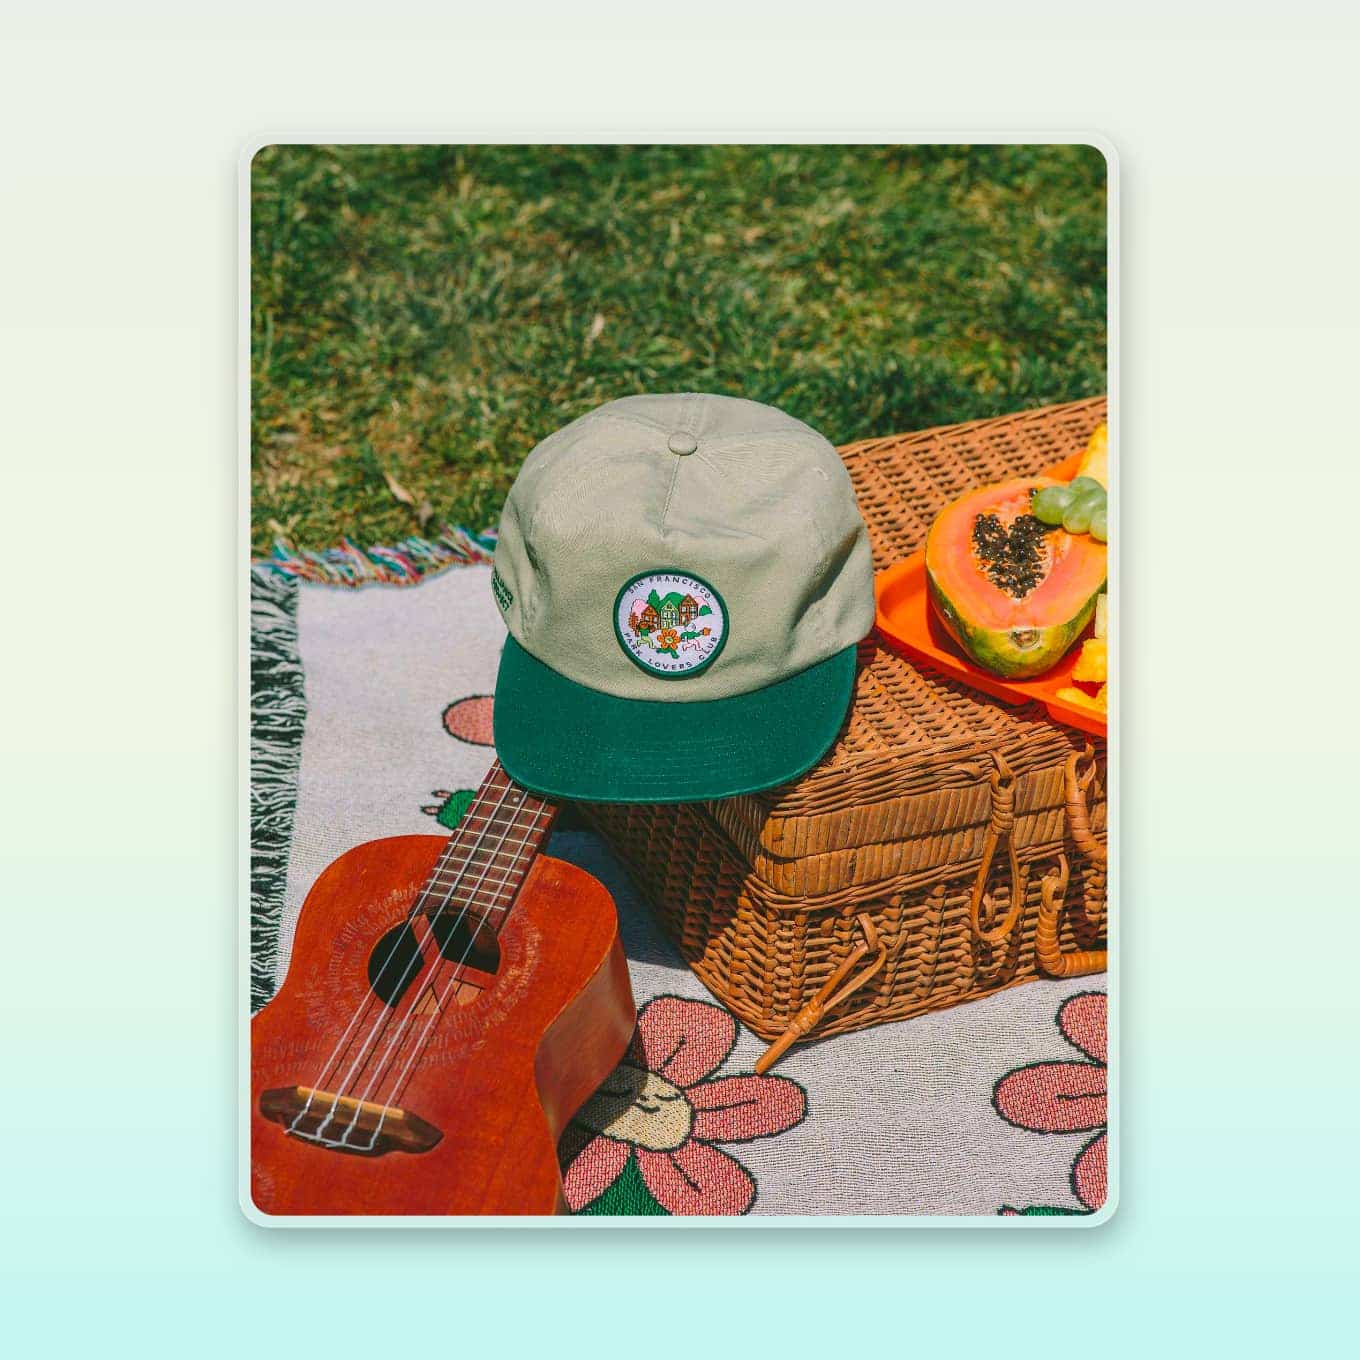 Klassieke hoed met een groene snavel, uitgestald op een picknick